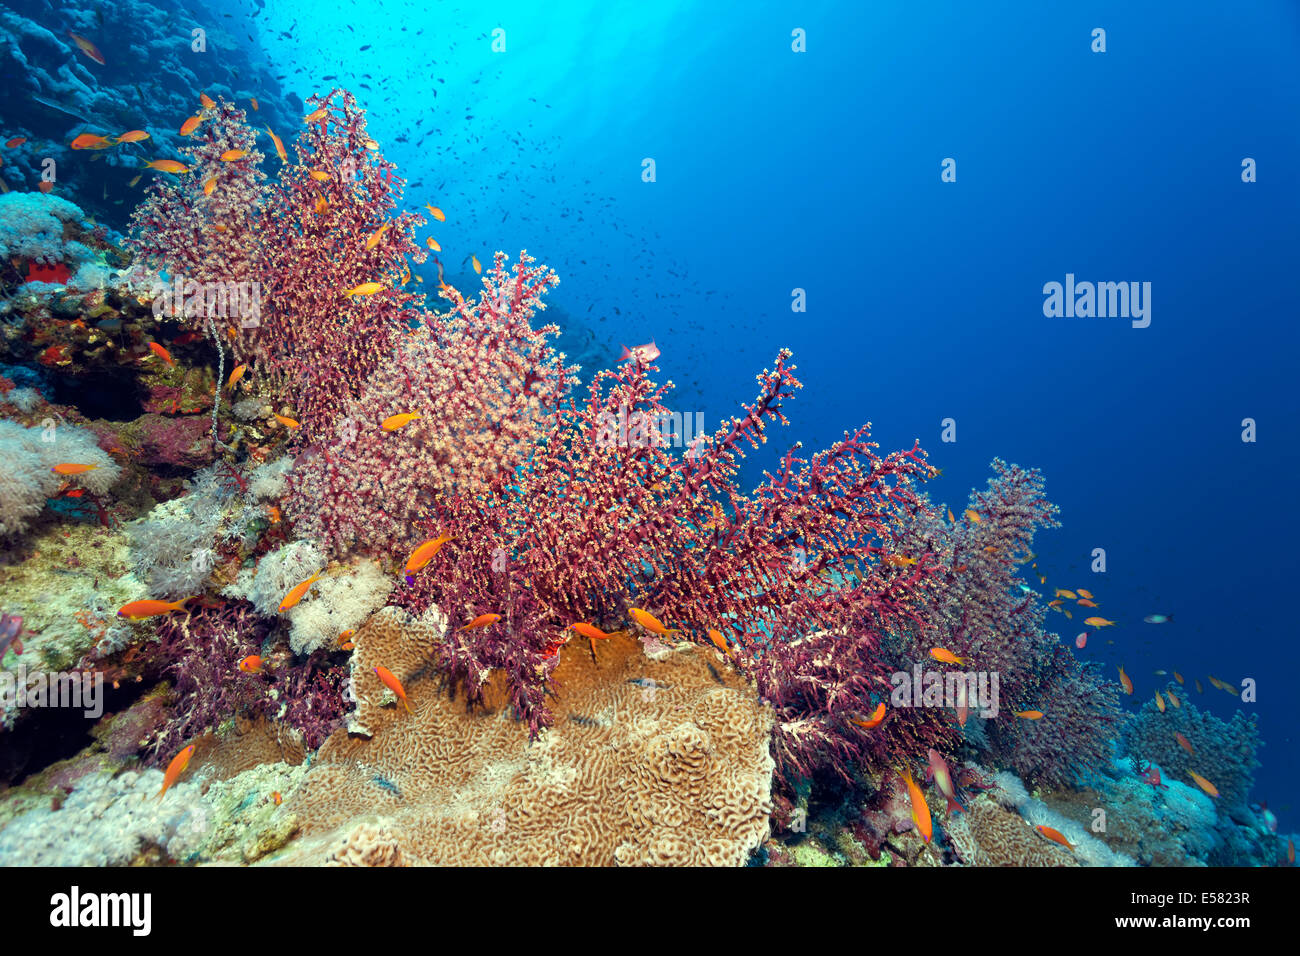 Cherry Blossom coral (Siphonogorgia godeffroyi) avec polypes ouverts et fermés, Red Sea, Egypt Banque D'Images